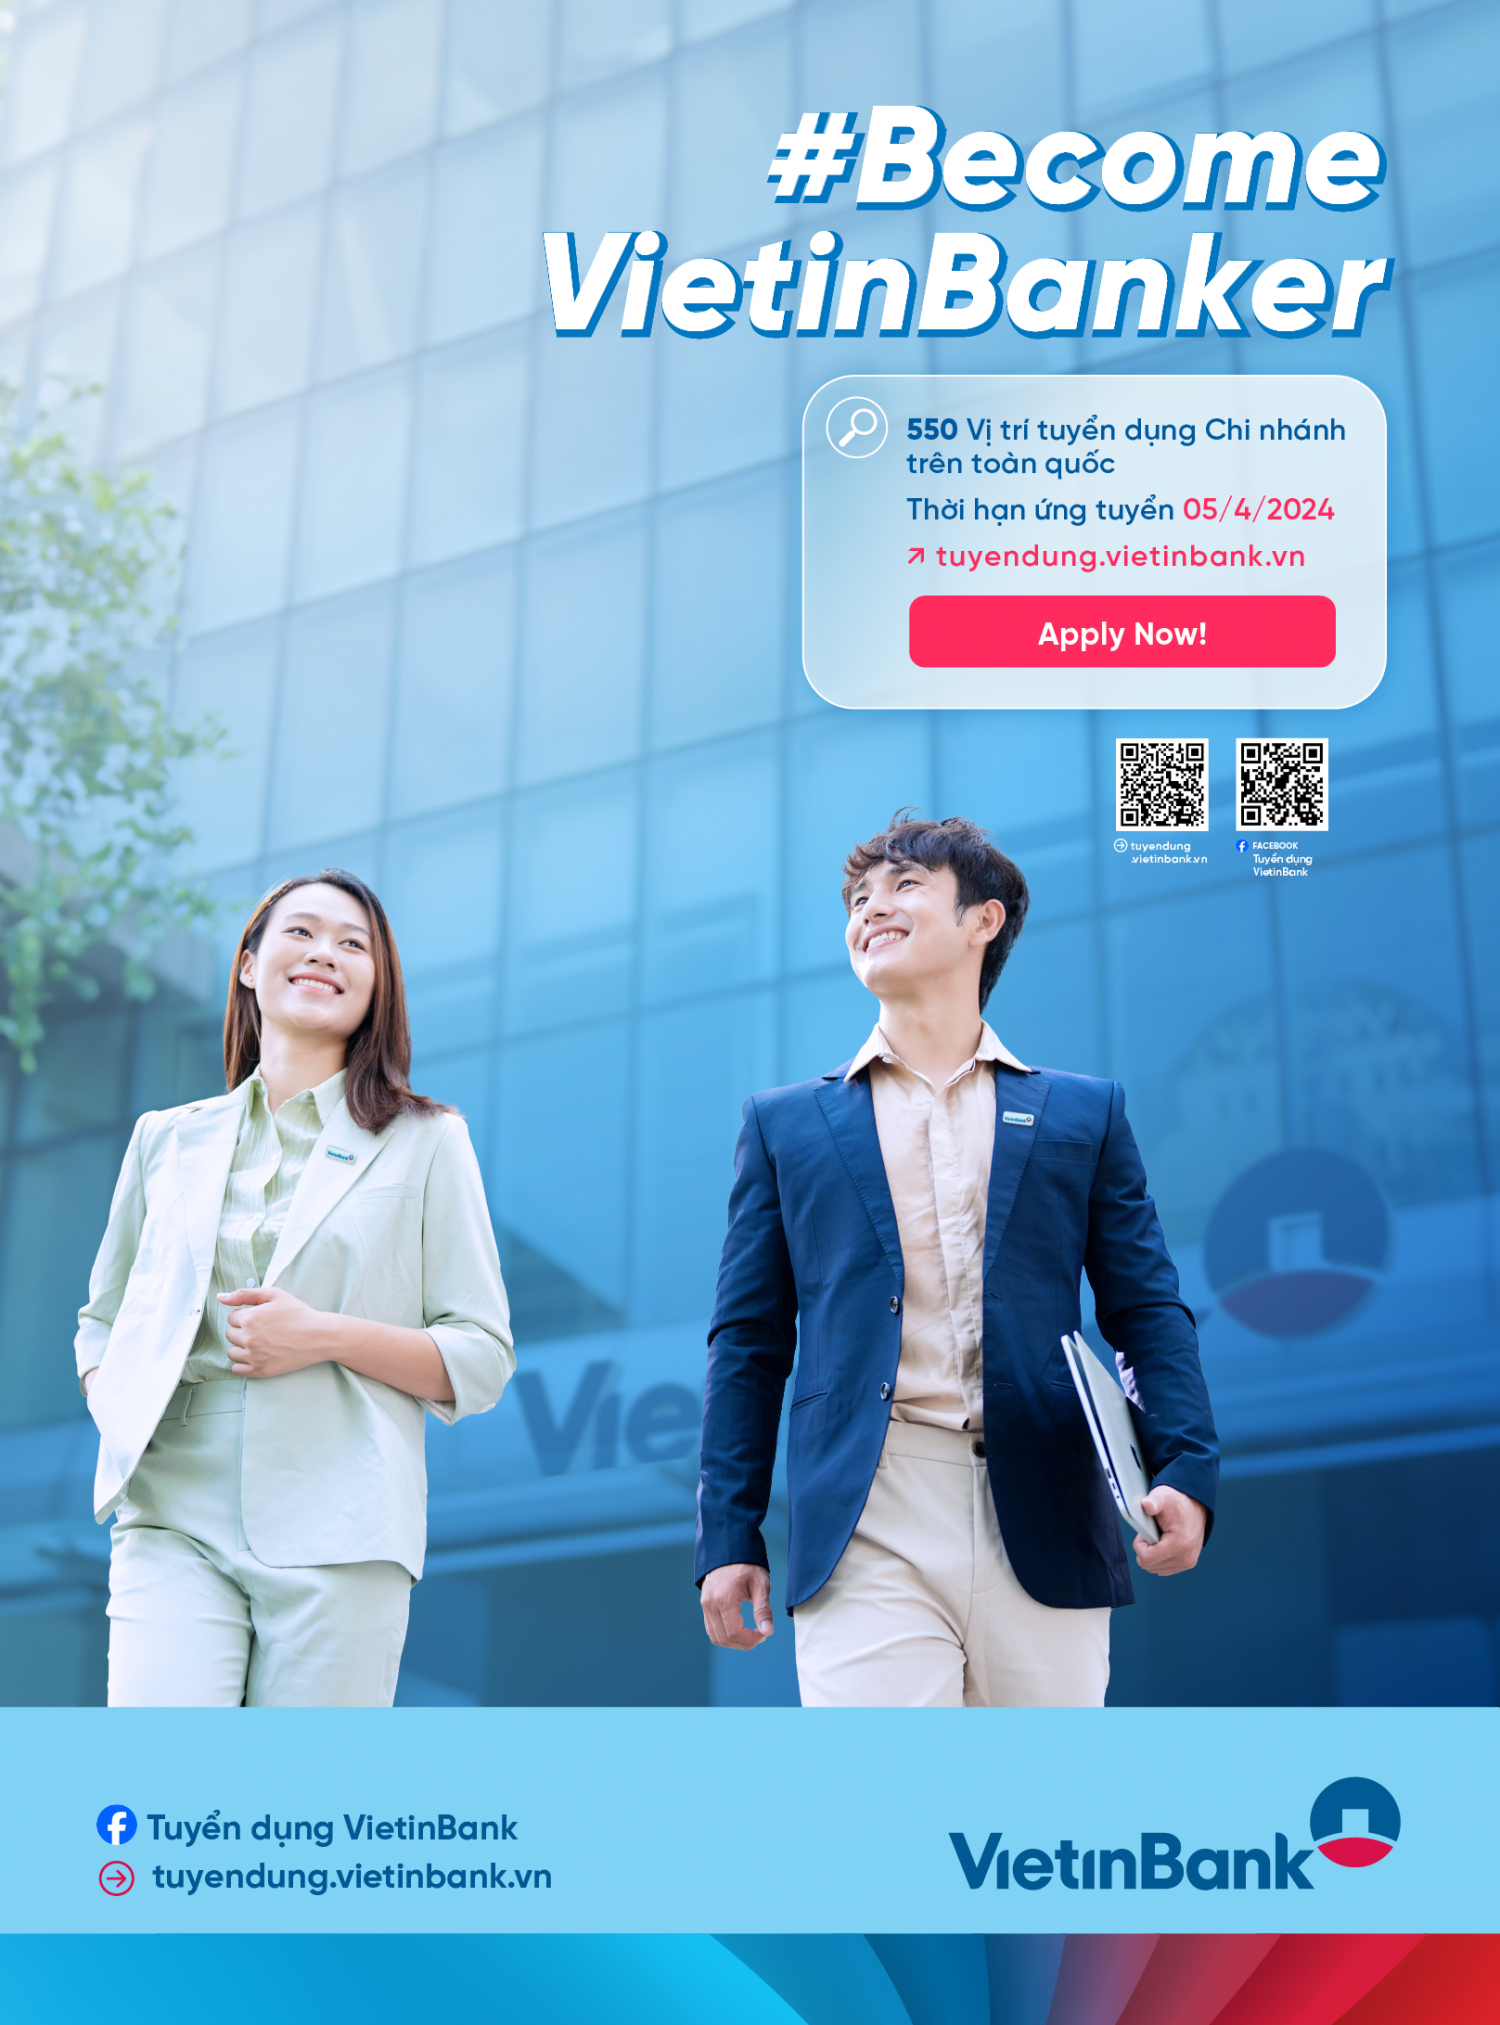 VietinBank tuyển dụng nhân sự với quy mô lớn